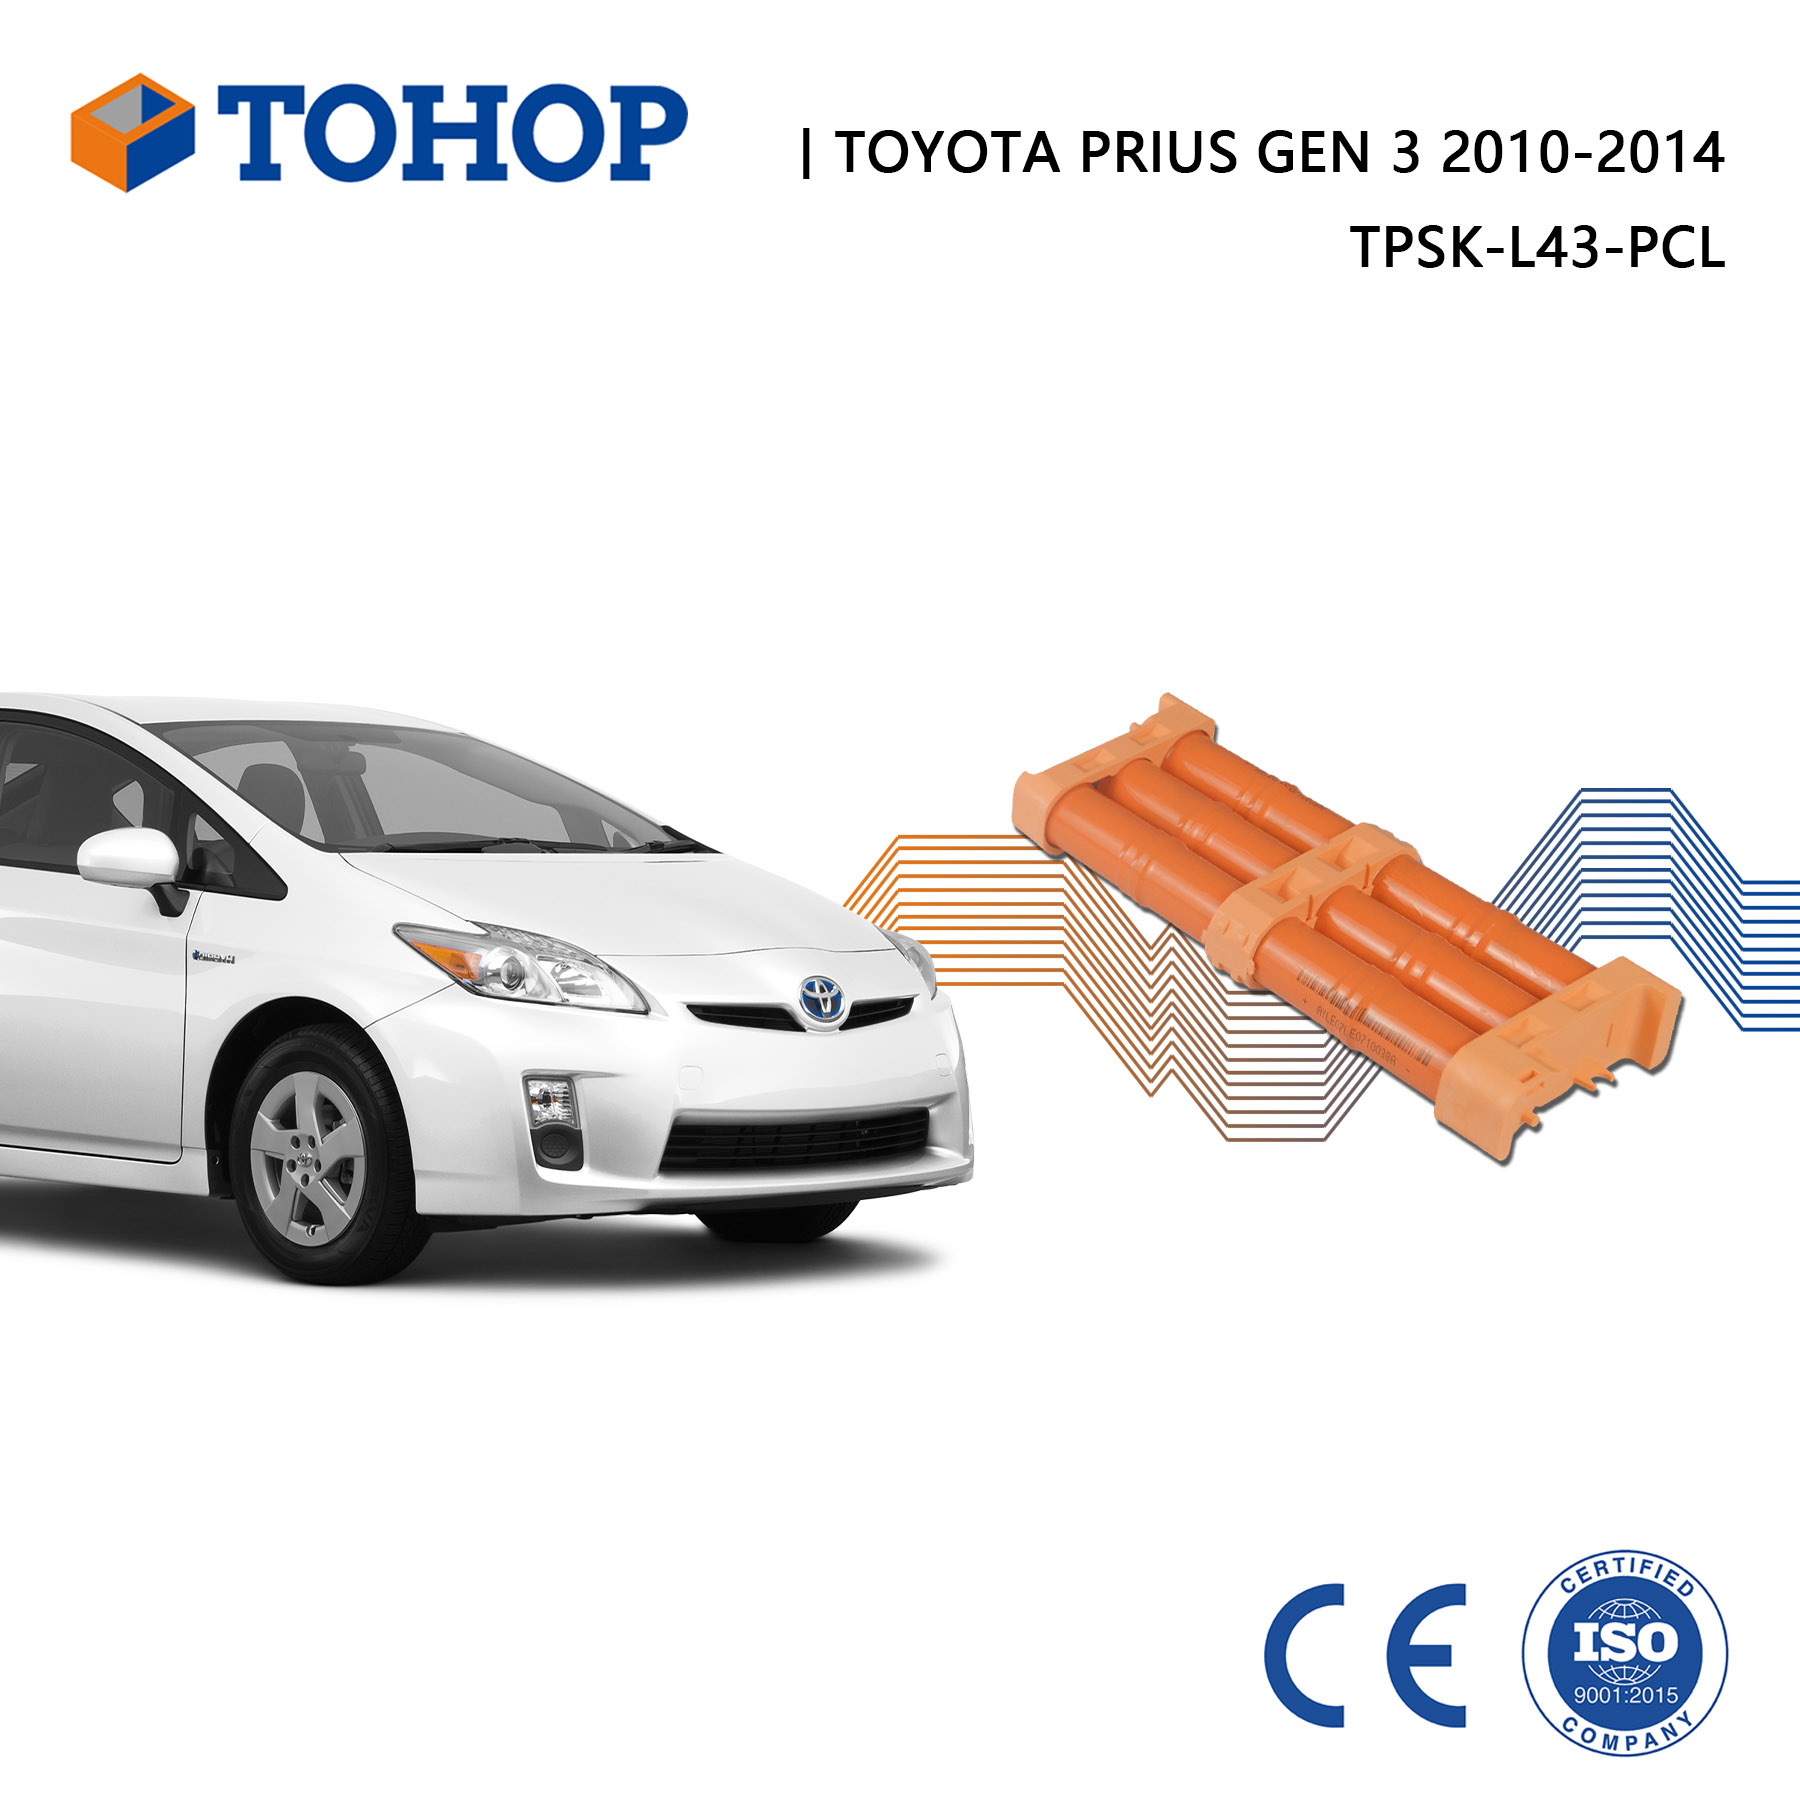 Toyota Prius Gen 3 2010-2015 Hybridautobatterie Direkt ab Werk Nimh Hybridbatterie